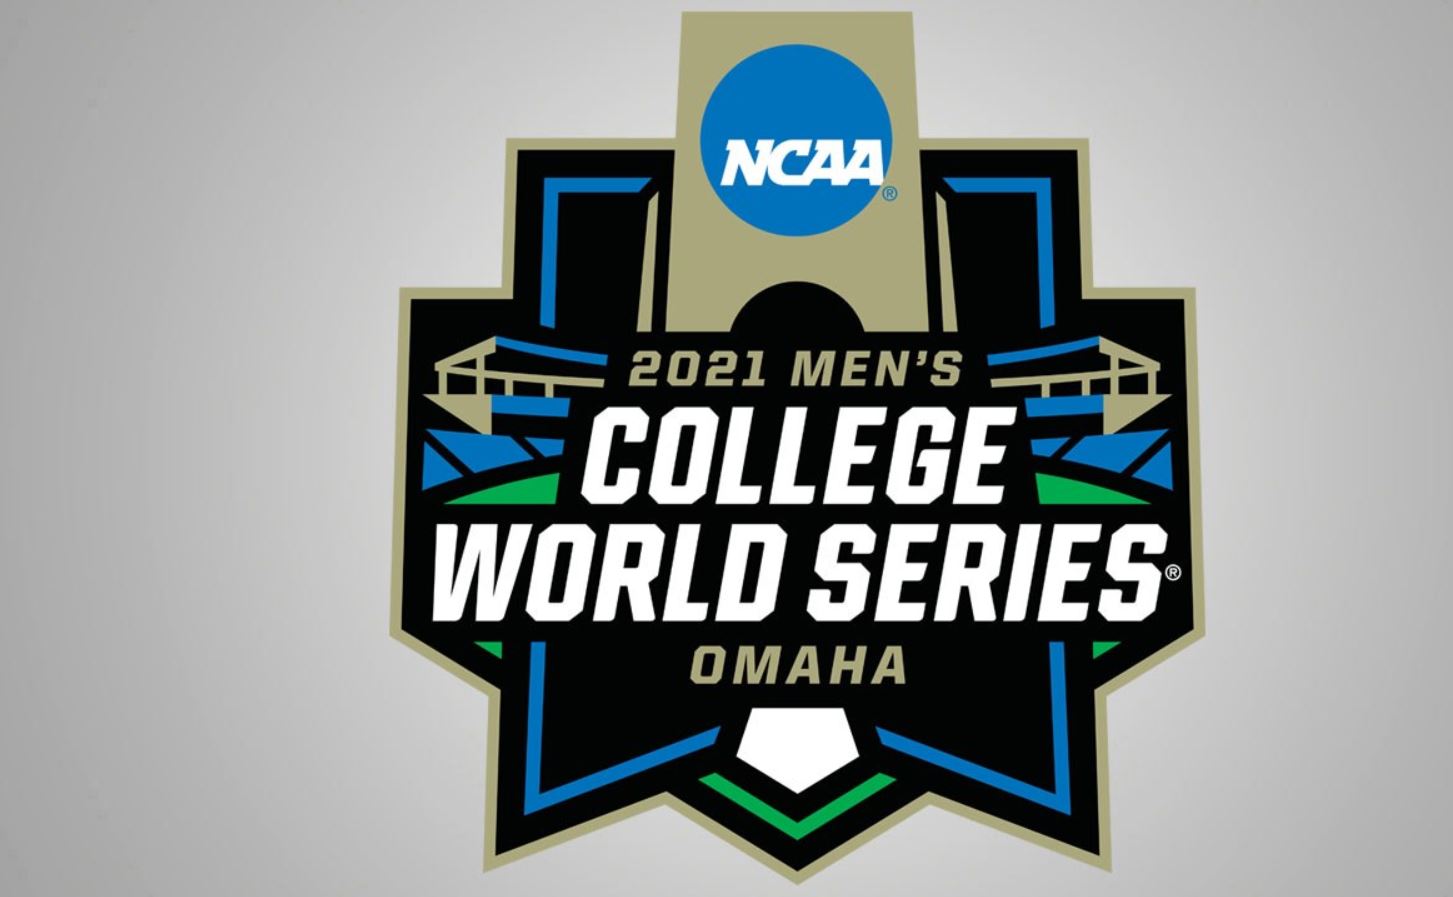 2021 Men's College World Series schedule